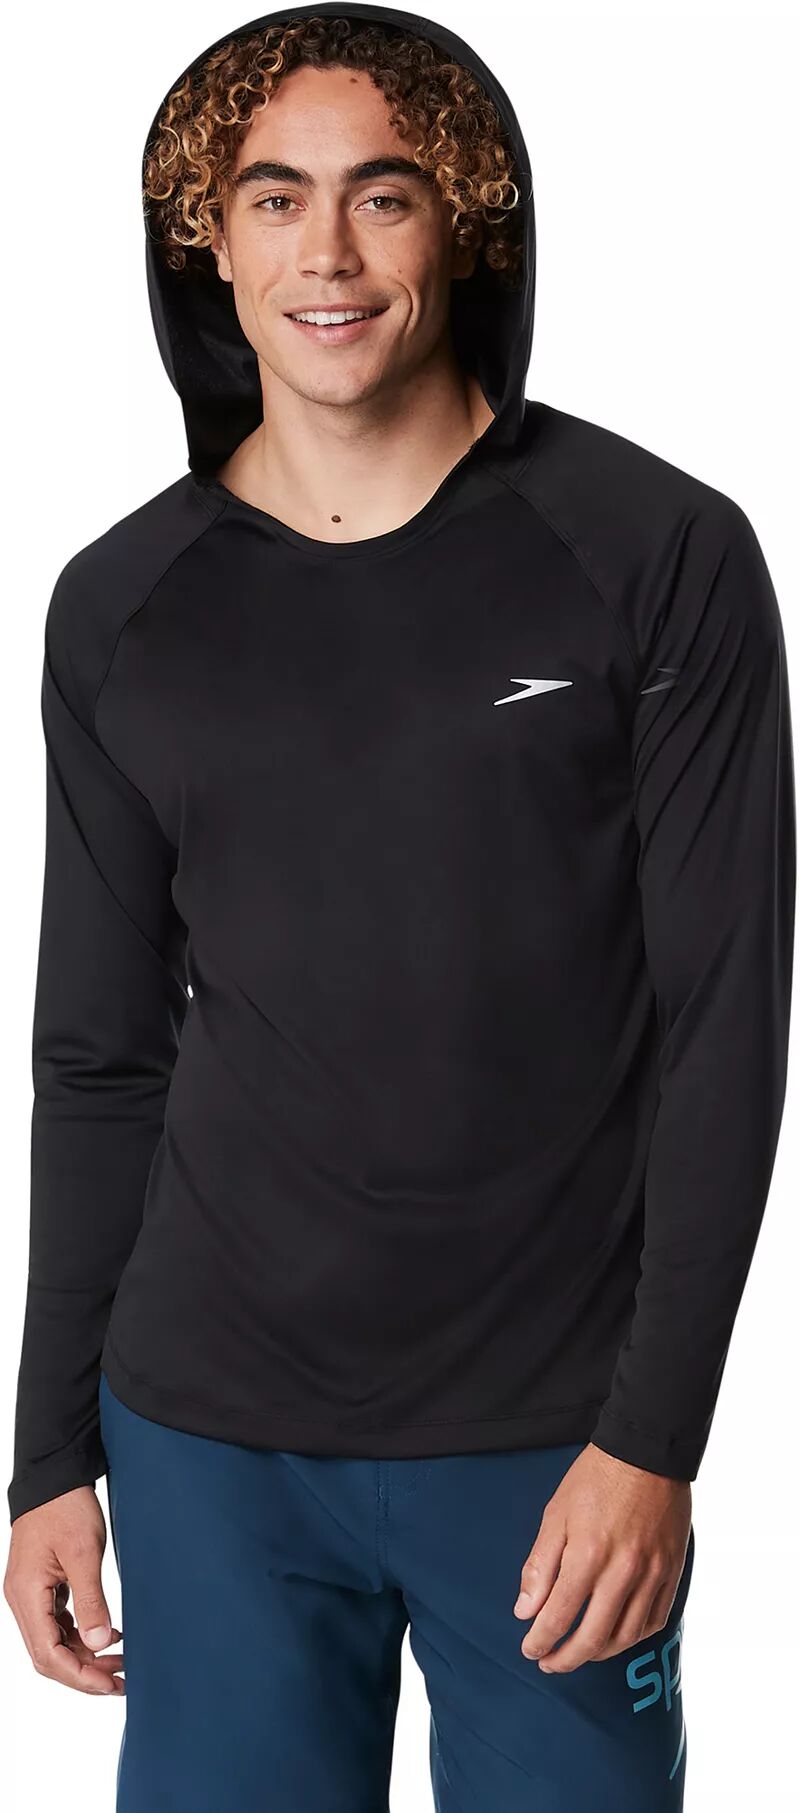 Мужская рубашка для плавания Speedo с капюшоном и длинными рукавами фото